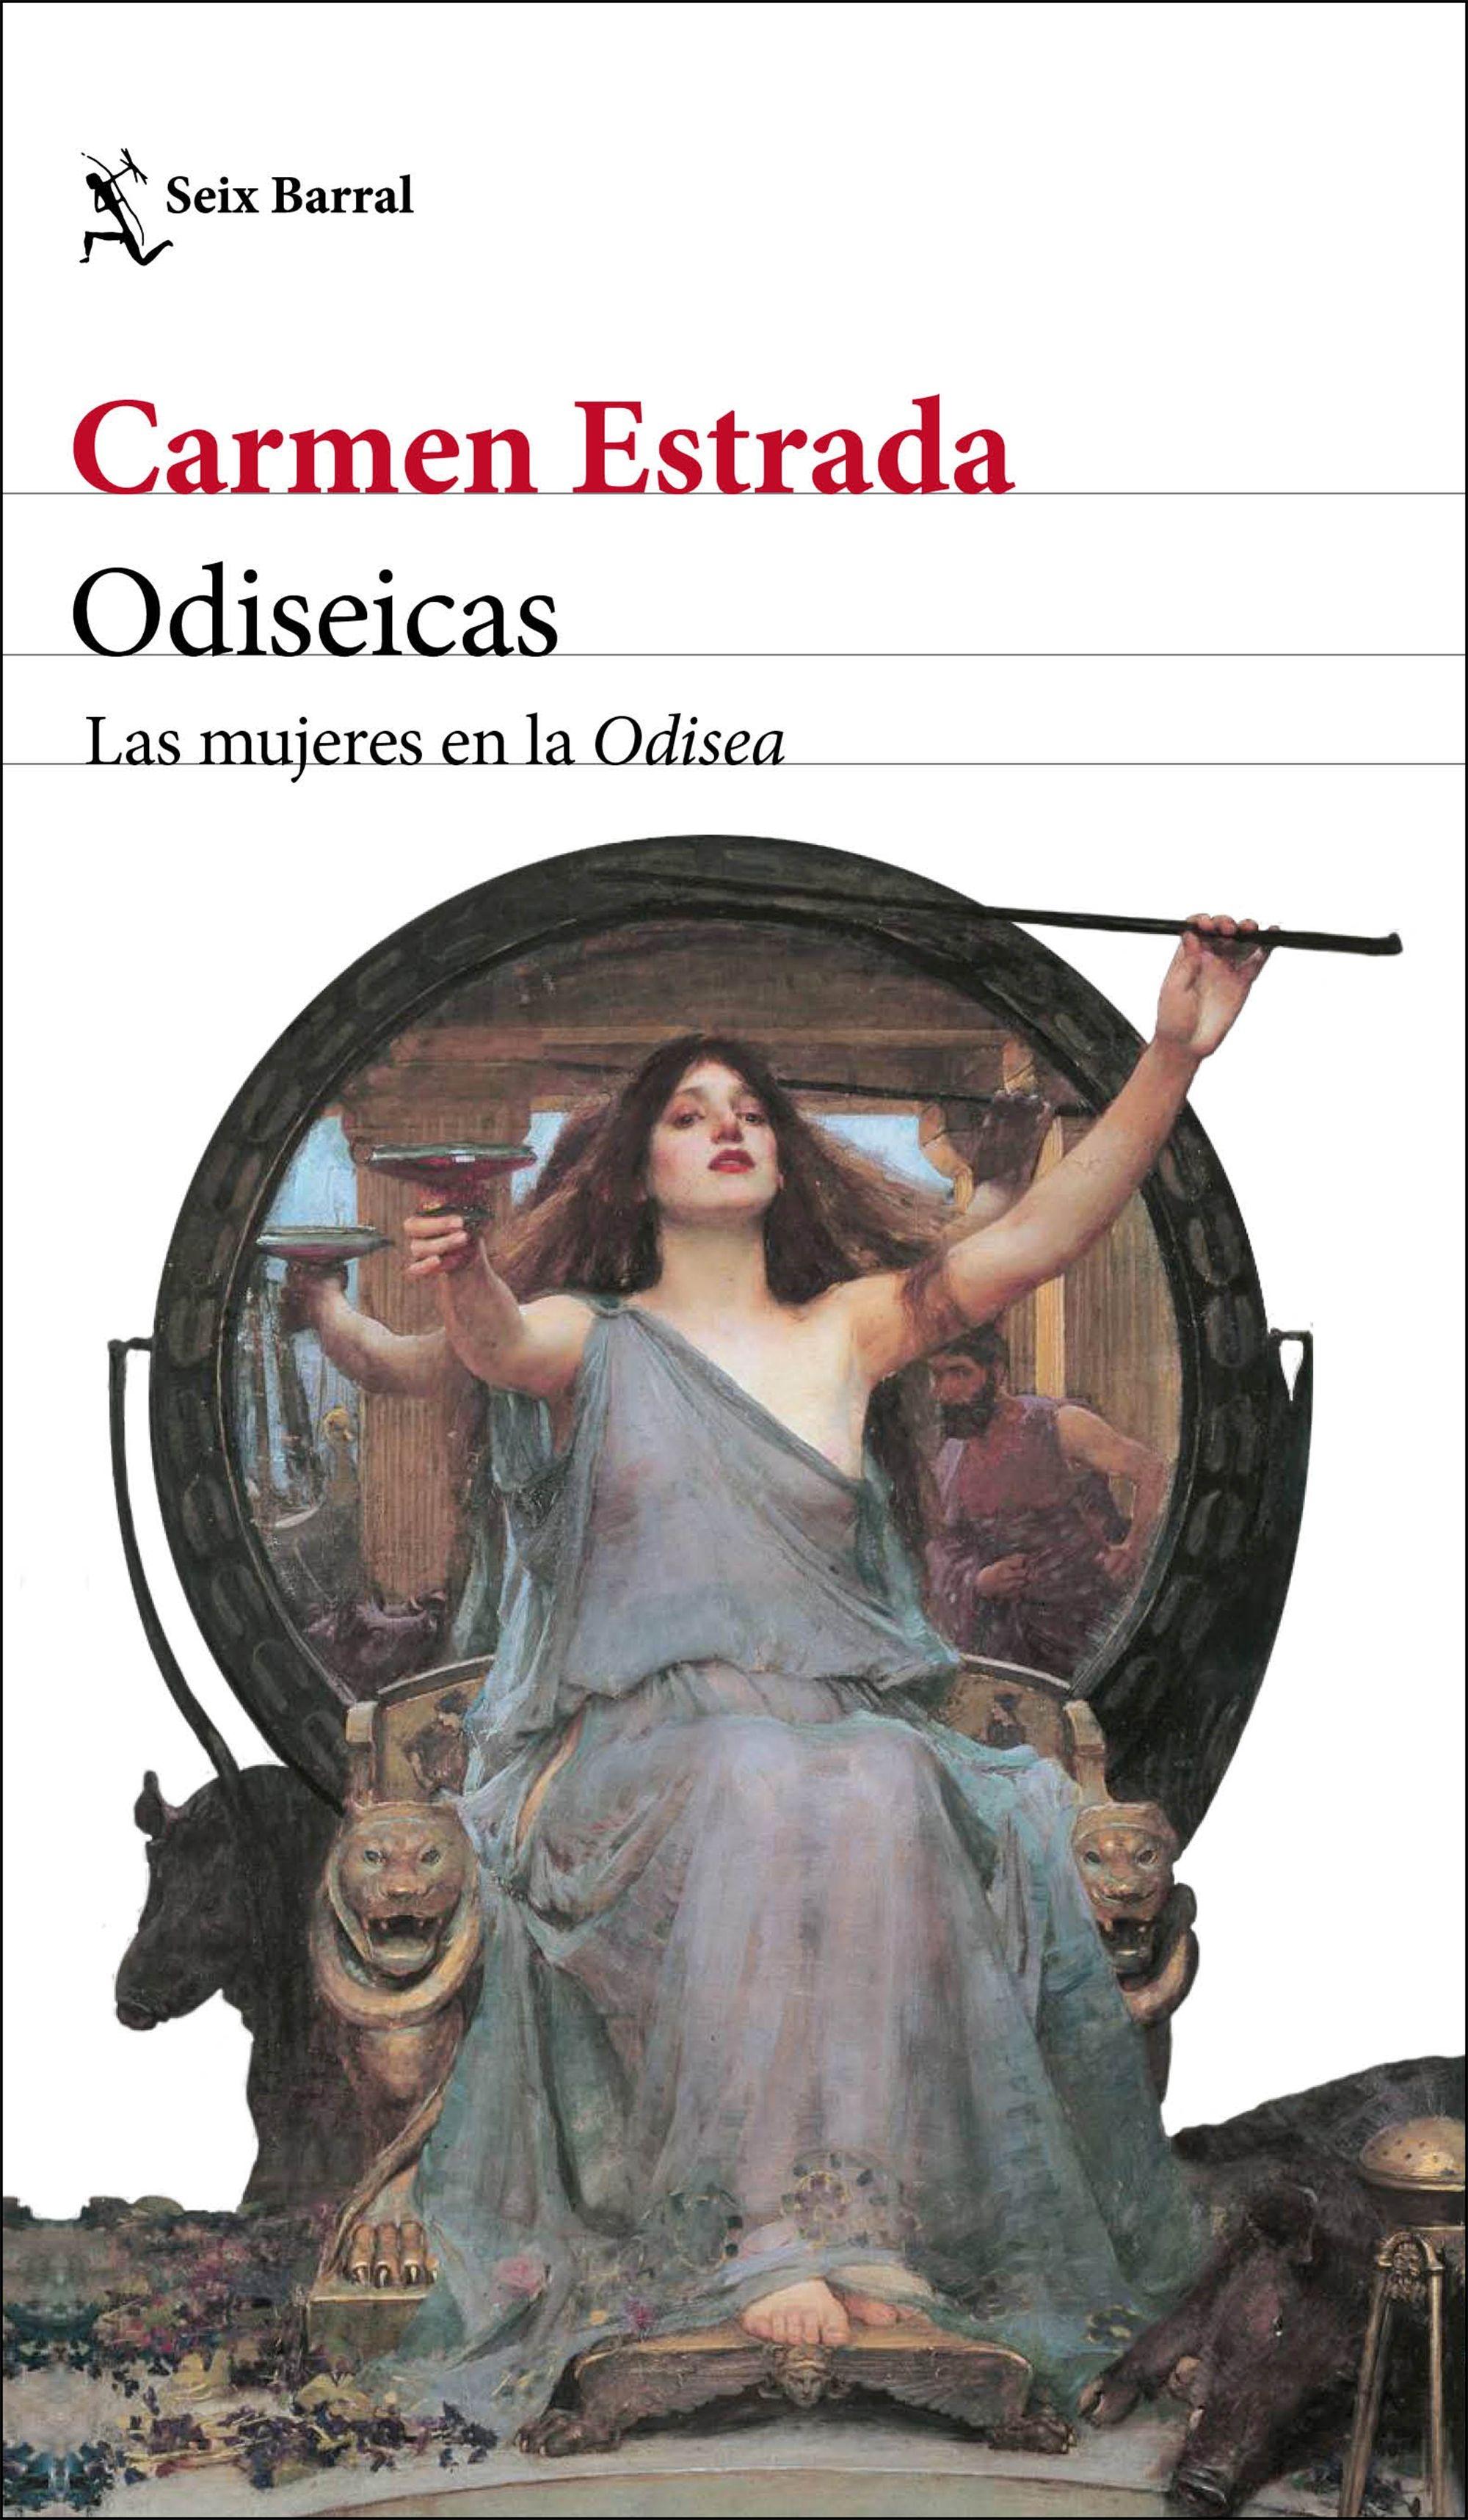 Odiseicas "Las Mujeres en la Odisea". 